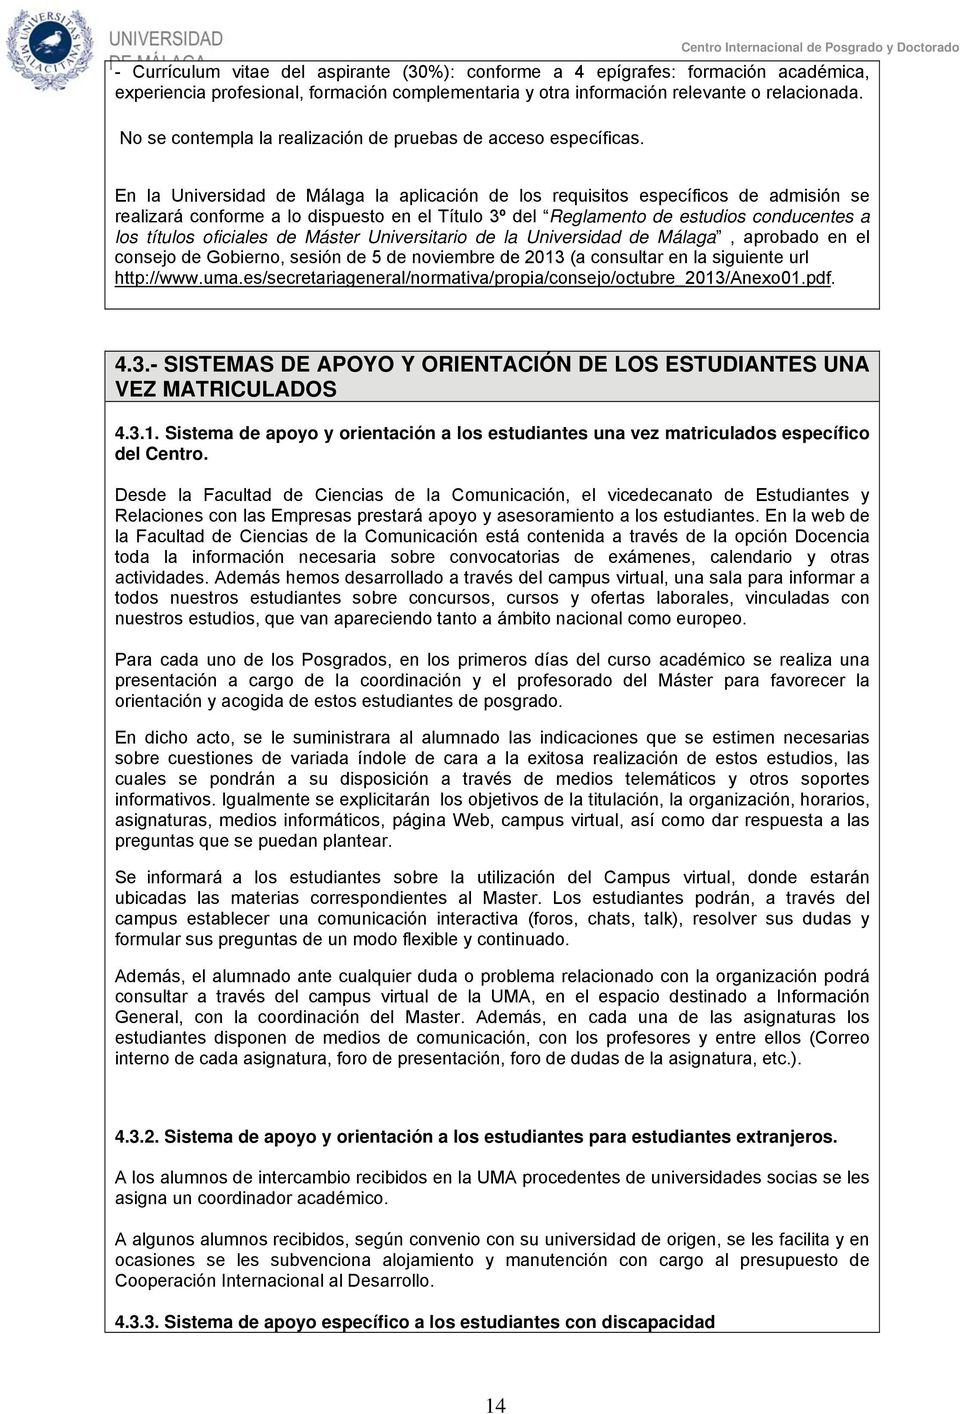 En la Universidad de Málaga la aplicación de los requisitos específicos de admisión se realizará conforme a lo dispuesto en el Título 3º del Reglamento de estudios conducentes a los títulos oficiales